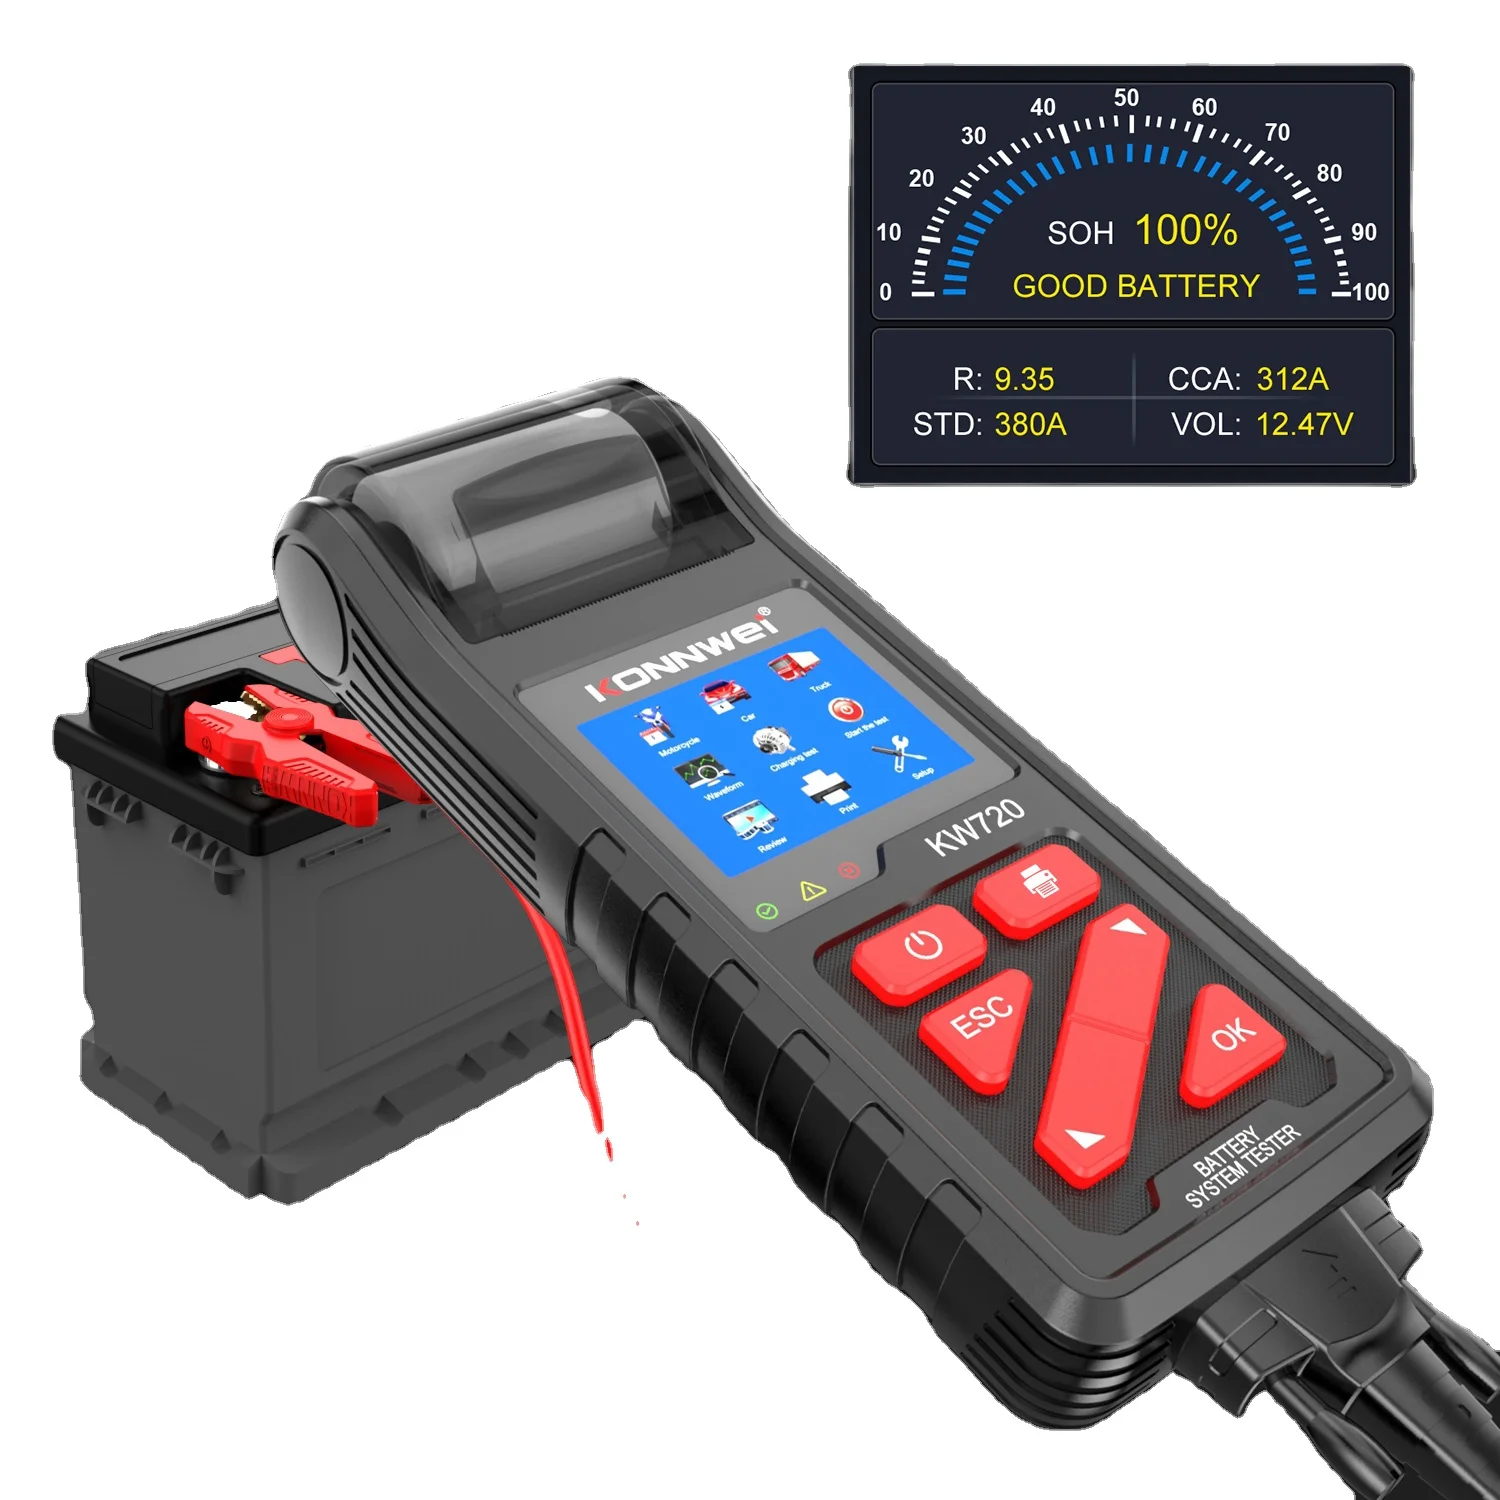 

Цифровой автомобильный тестер аккумуляторной батареи KONNWEI KW720, 12 В, 24 В, с принтером для автомобиля, грузовика, фабрики аккумуляторов или дил...